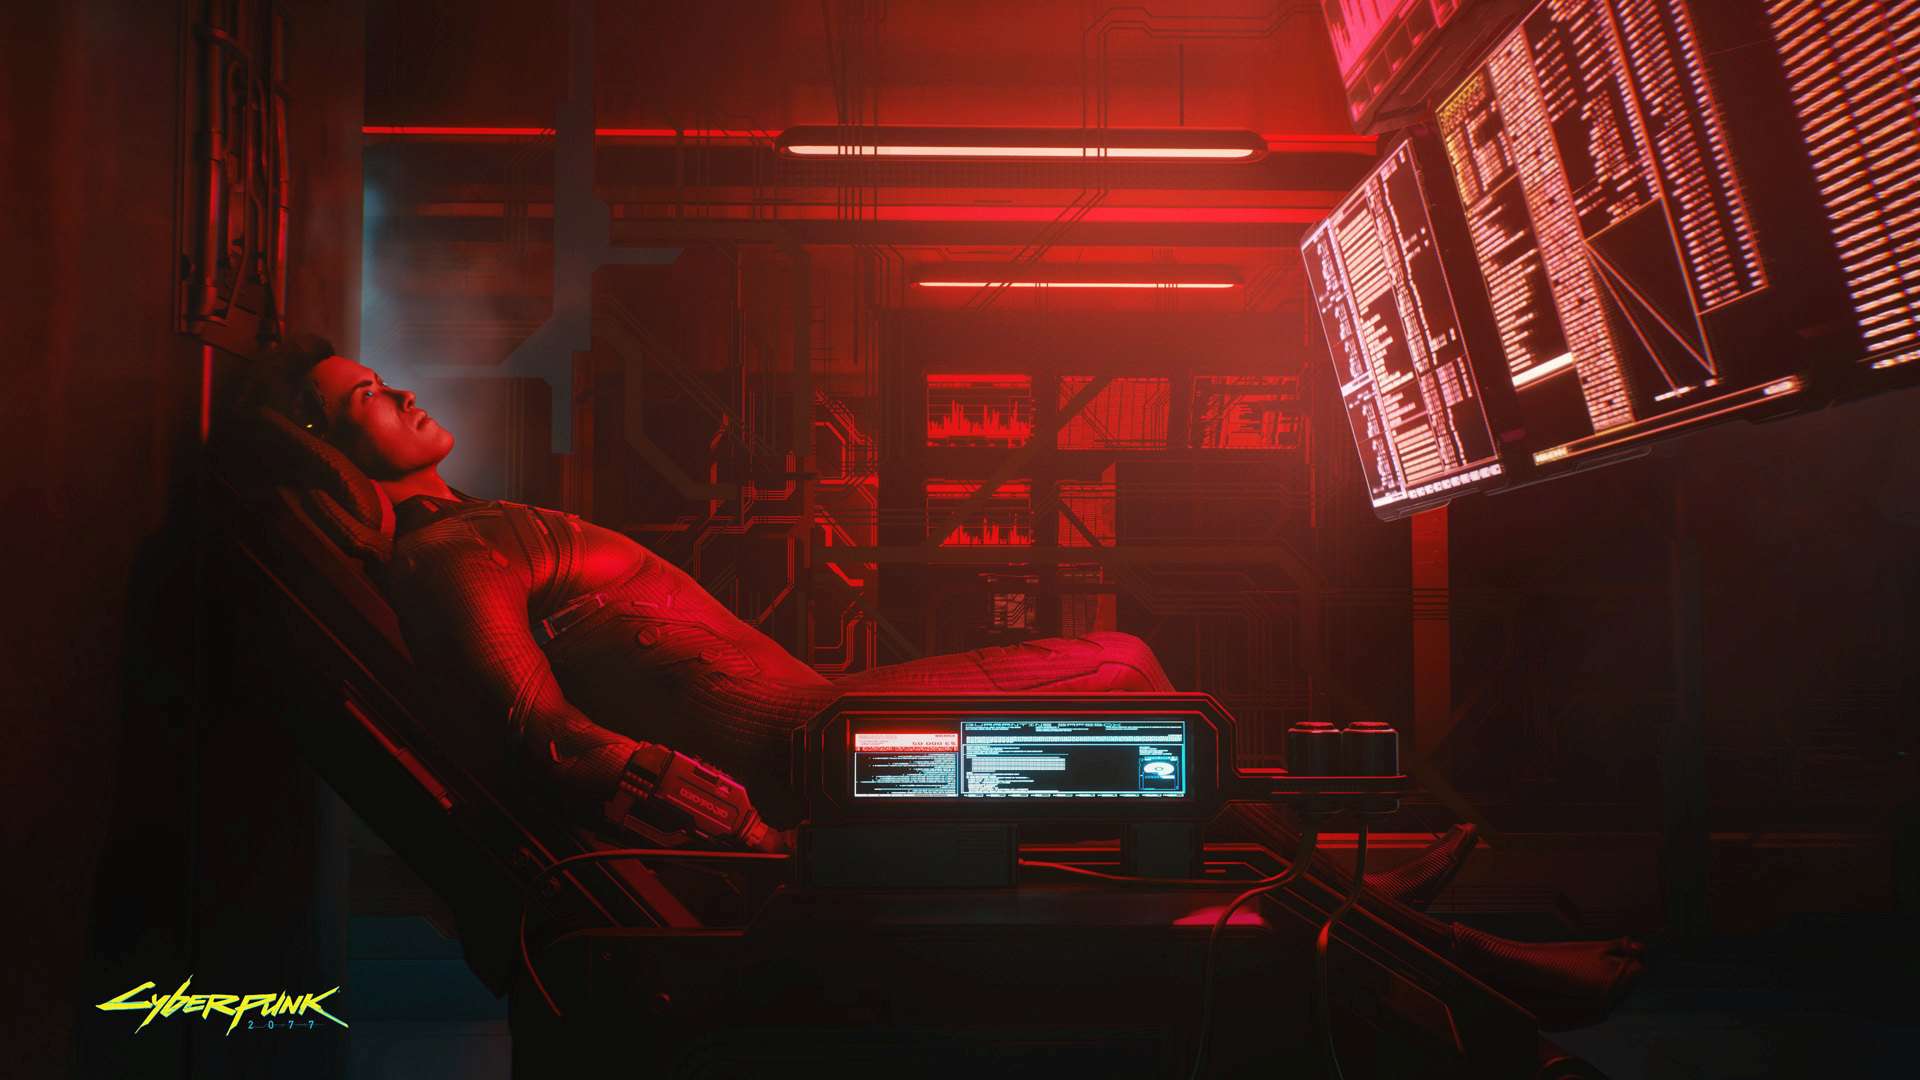 Postava Cyberpunk 2077 odpočívající na židli v červené místnosti plné obrazovky